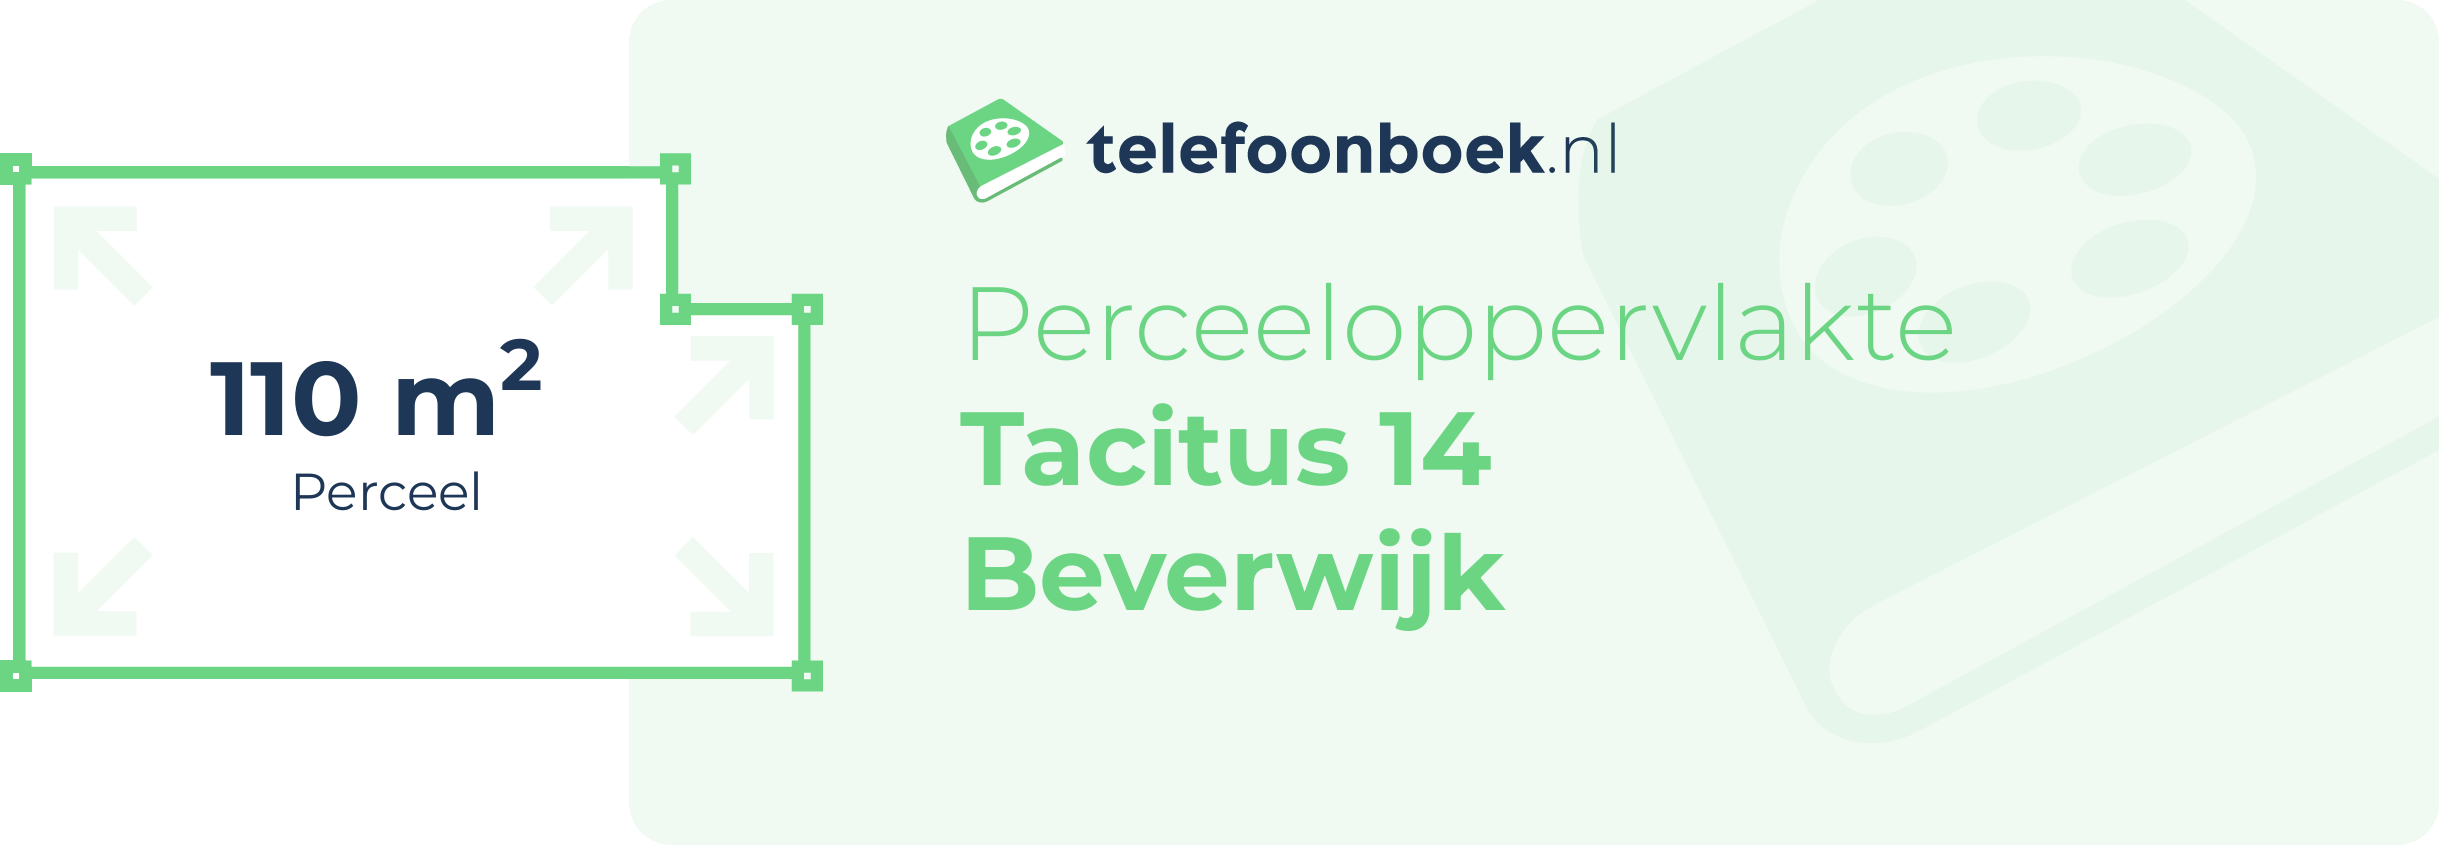 Perceeloppervlakte Tacitus 14 Beverwijk